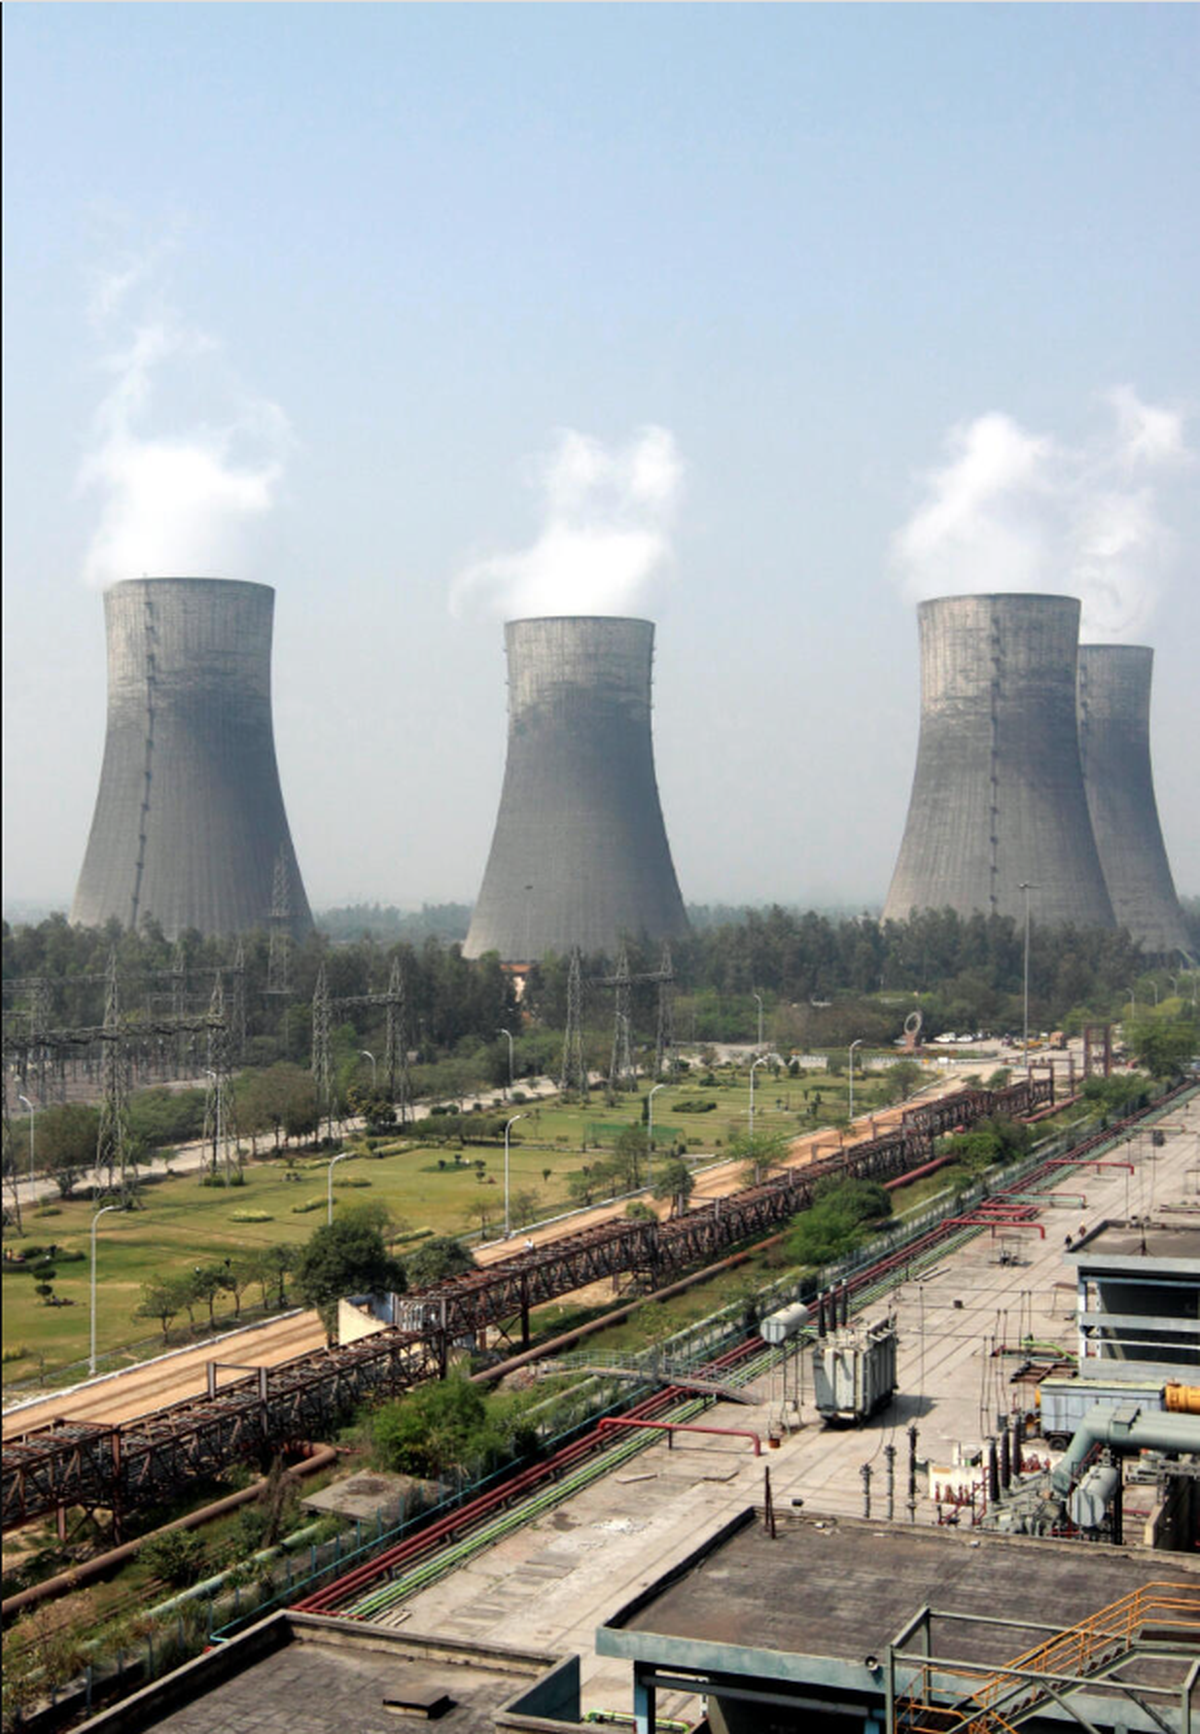 Kan de verlaten kerncentrale in Dadri, buiten Delhi, worden omgebouwd tot een museum zoals de Tate Modern?